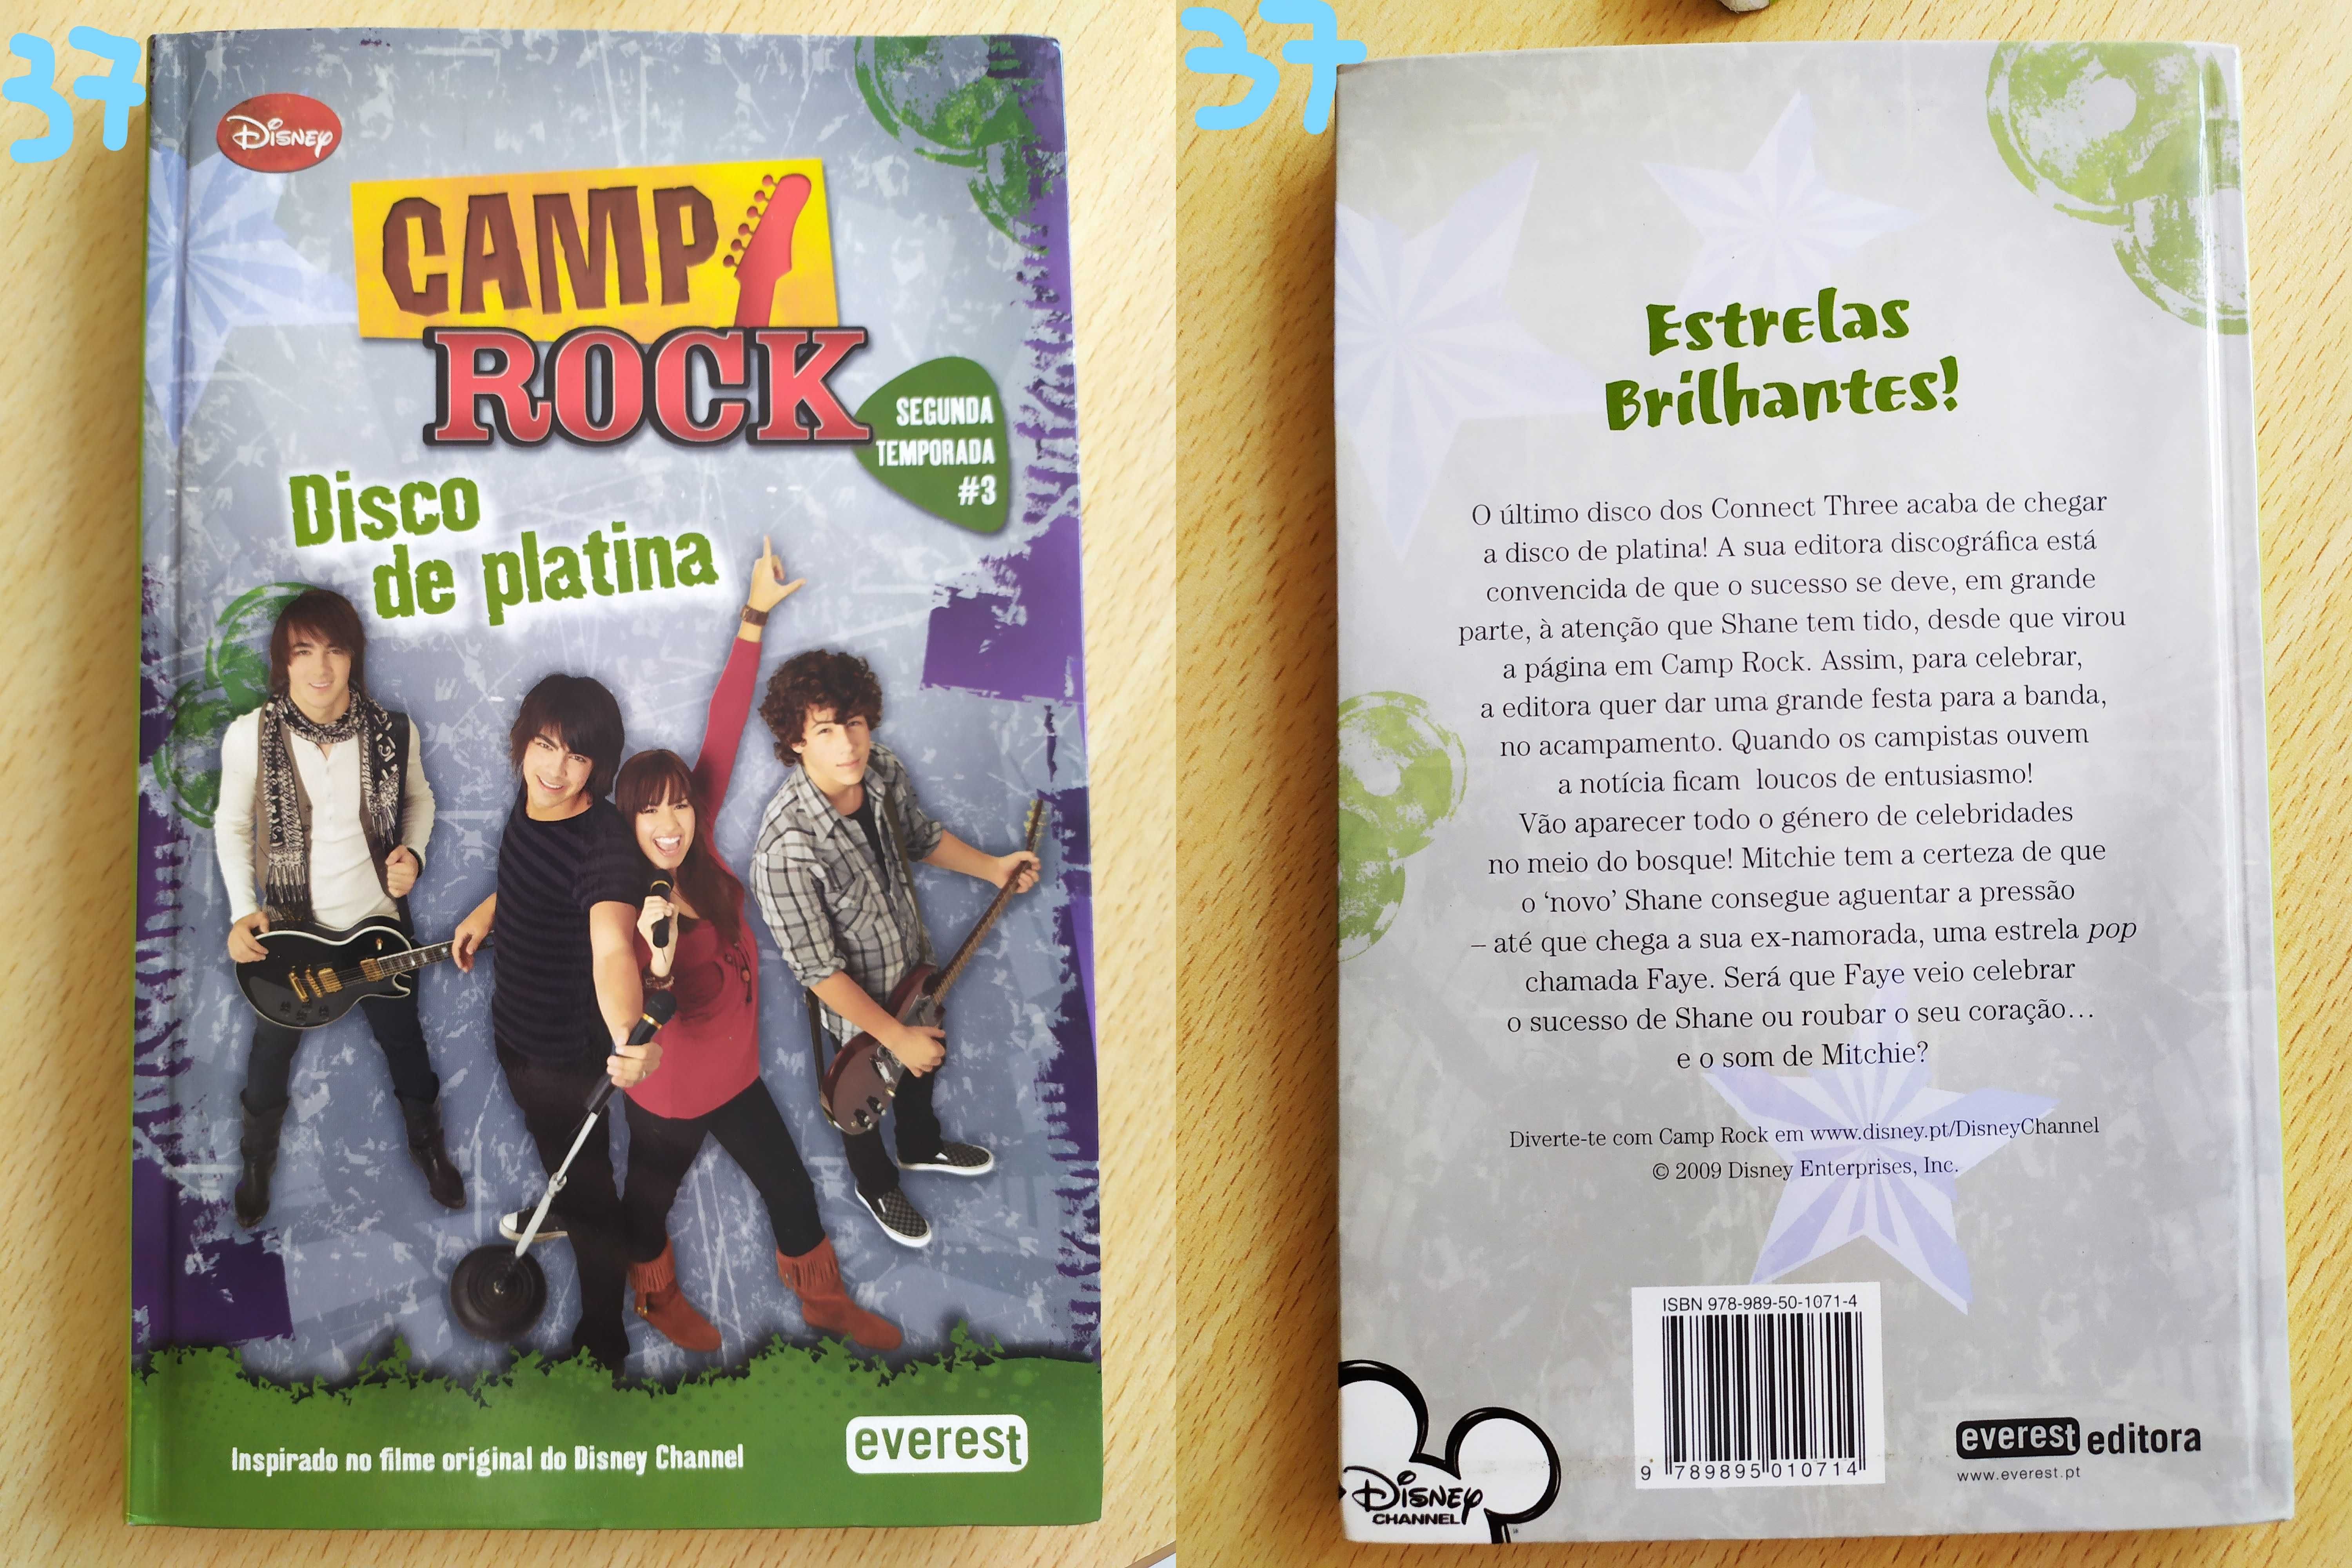 Livro: "Camp Rock - Disco de Platina"